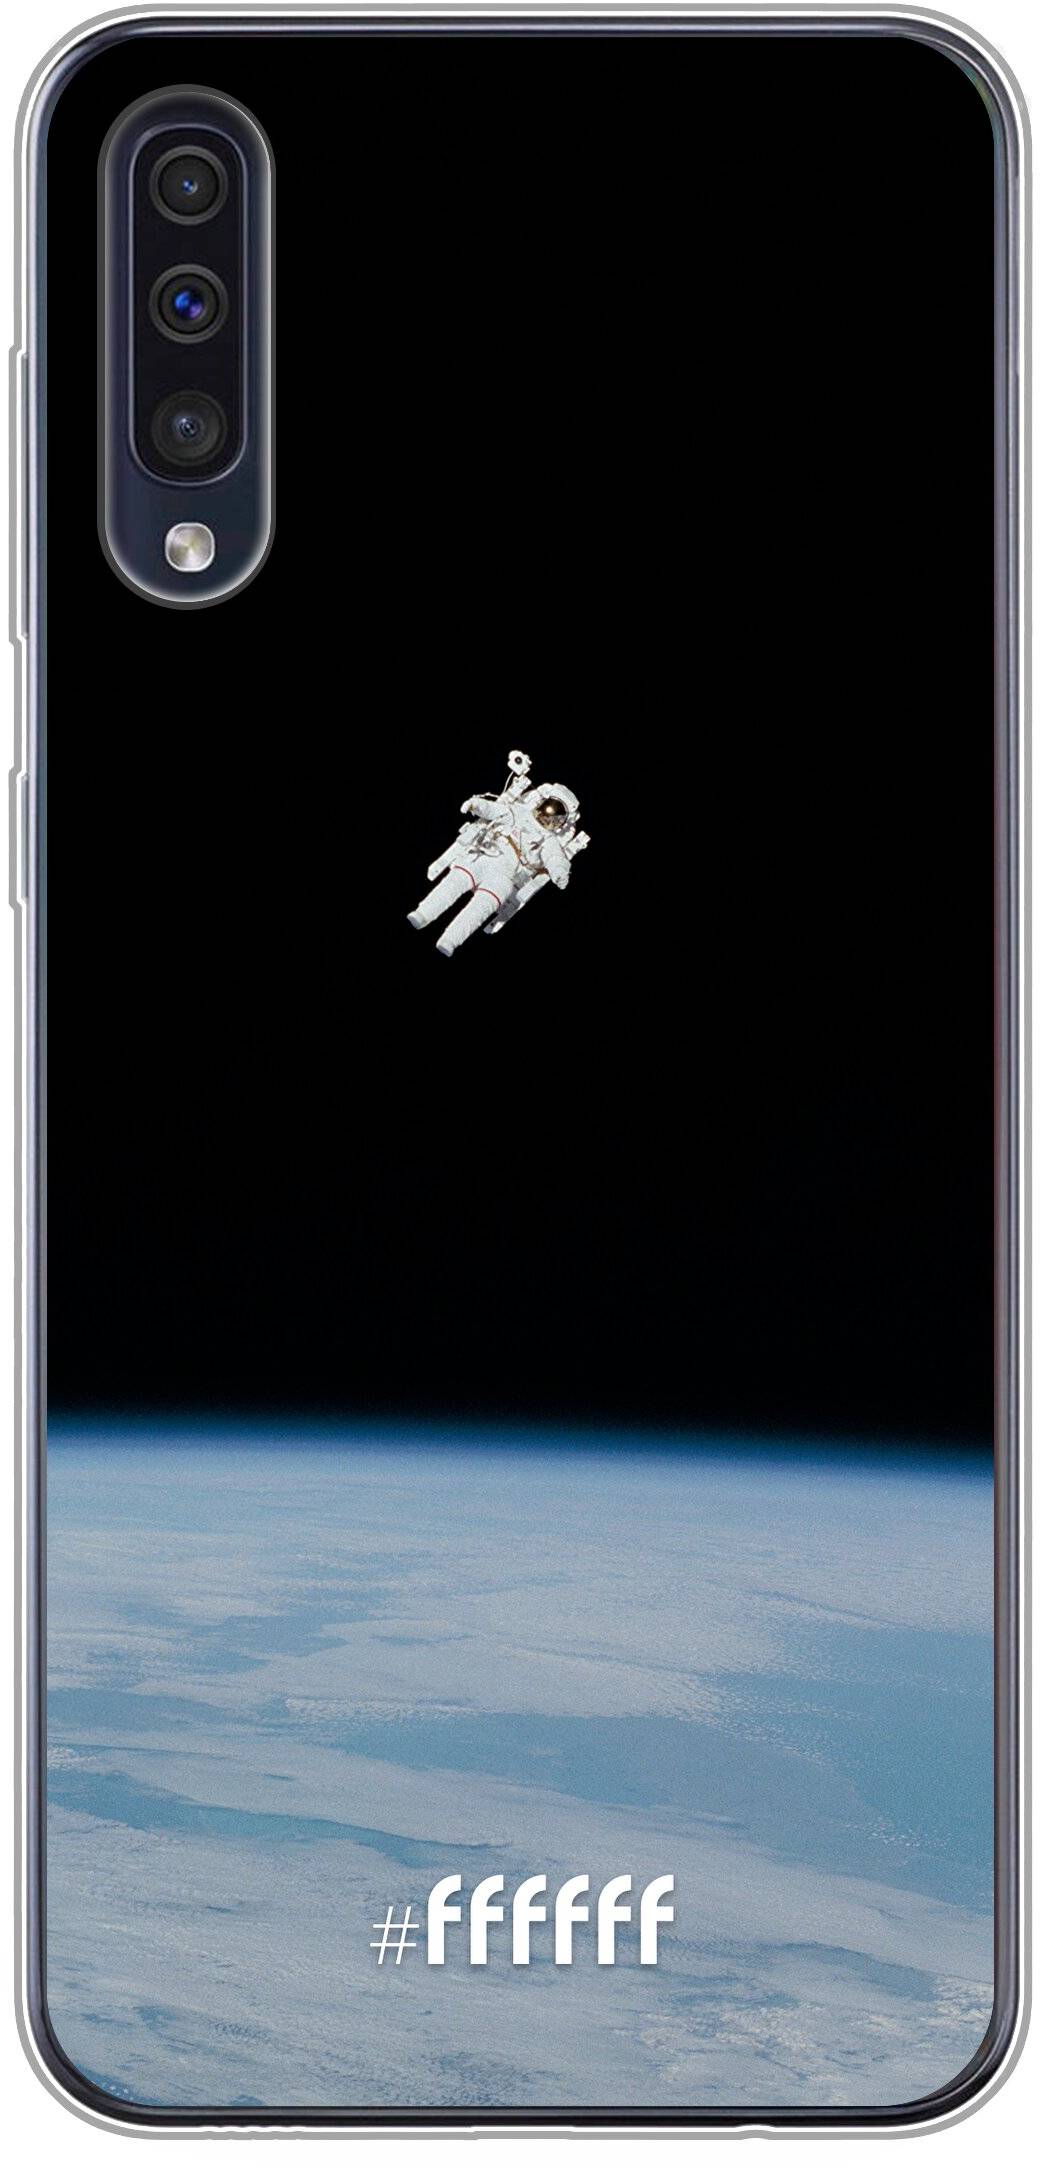 Spacewalk Galaxy A30s